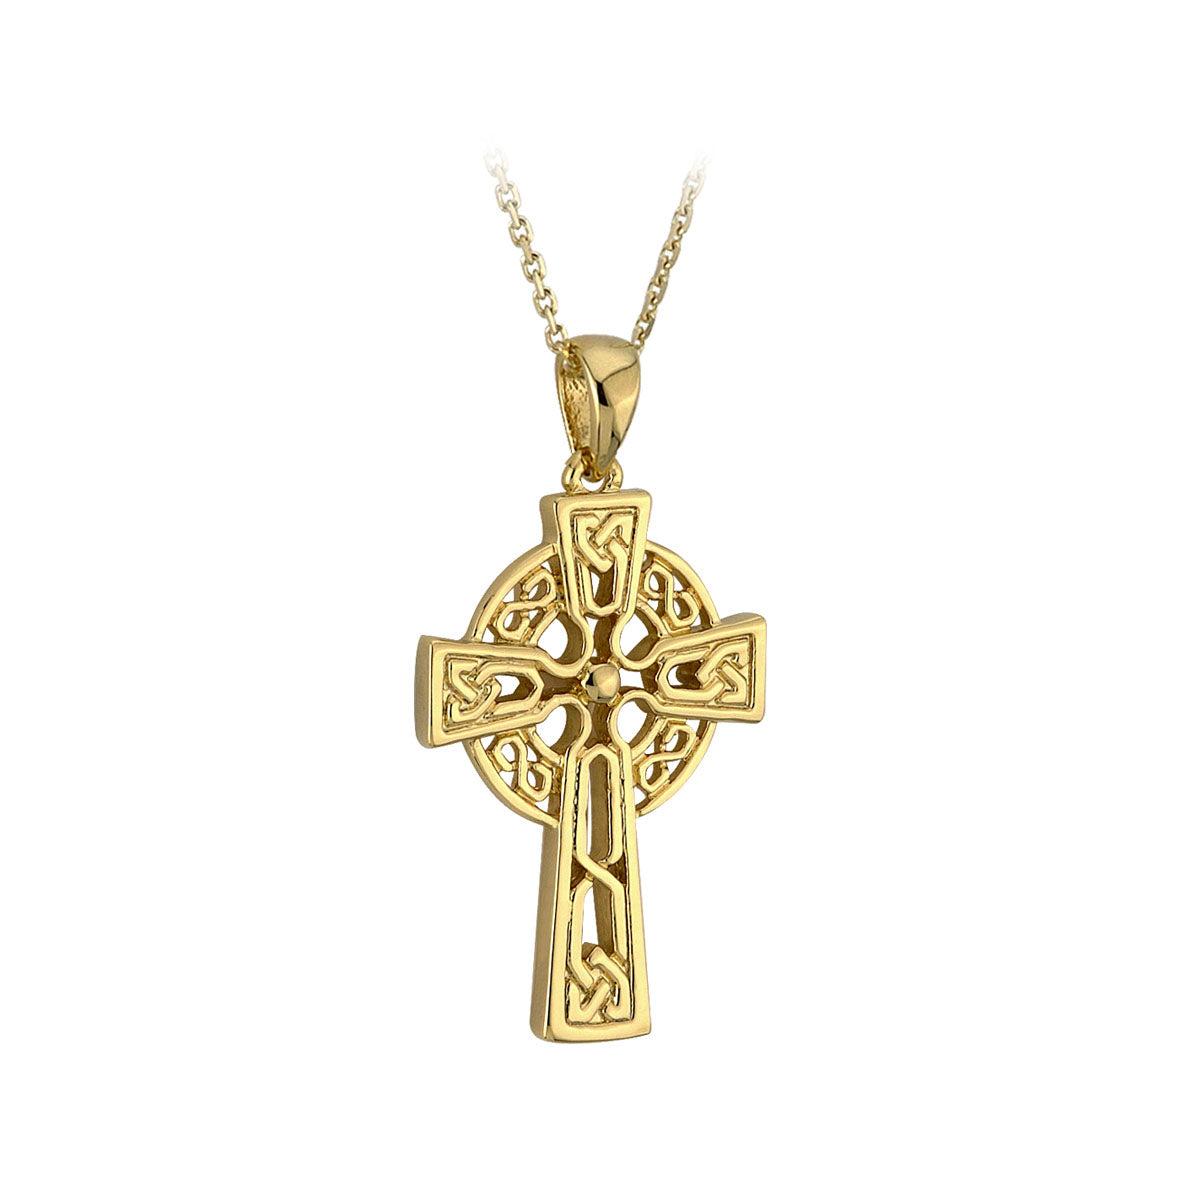 10k gold tiny celtic cross pendant s44943 from Solvar